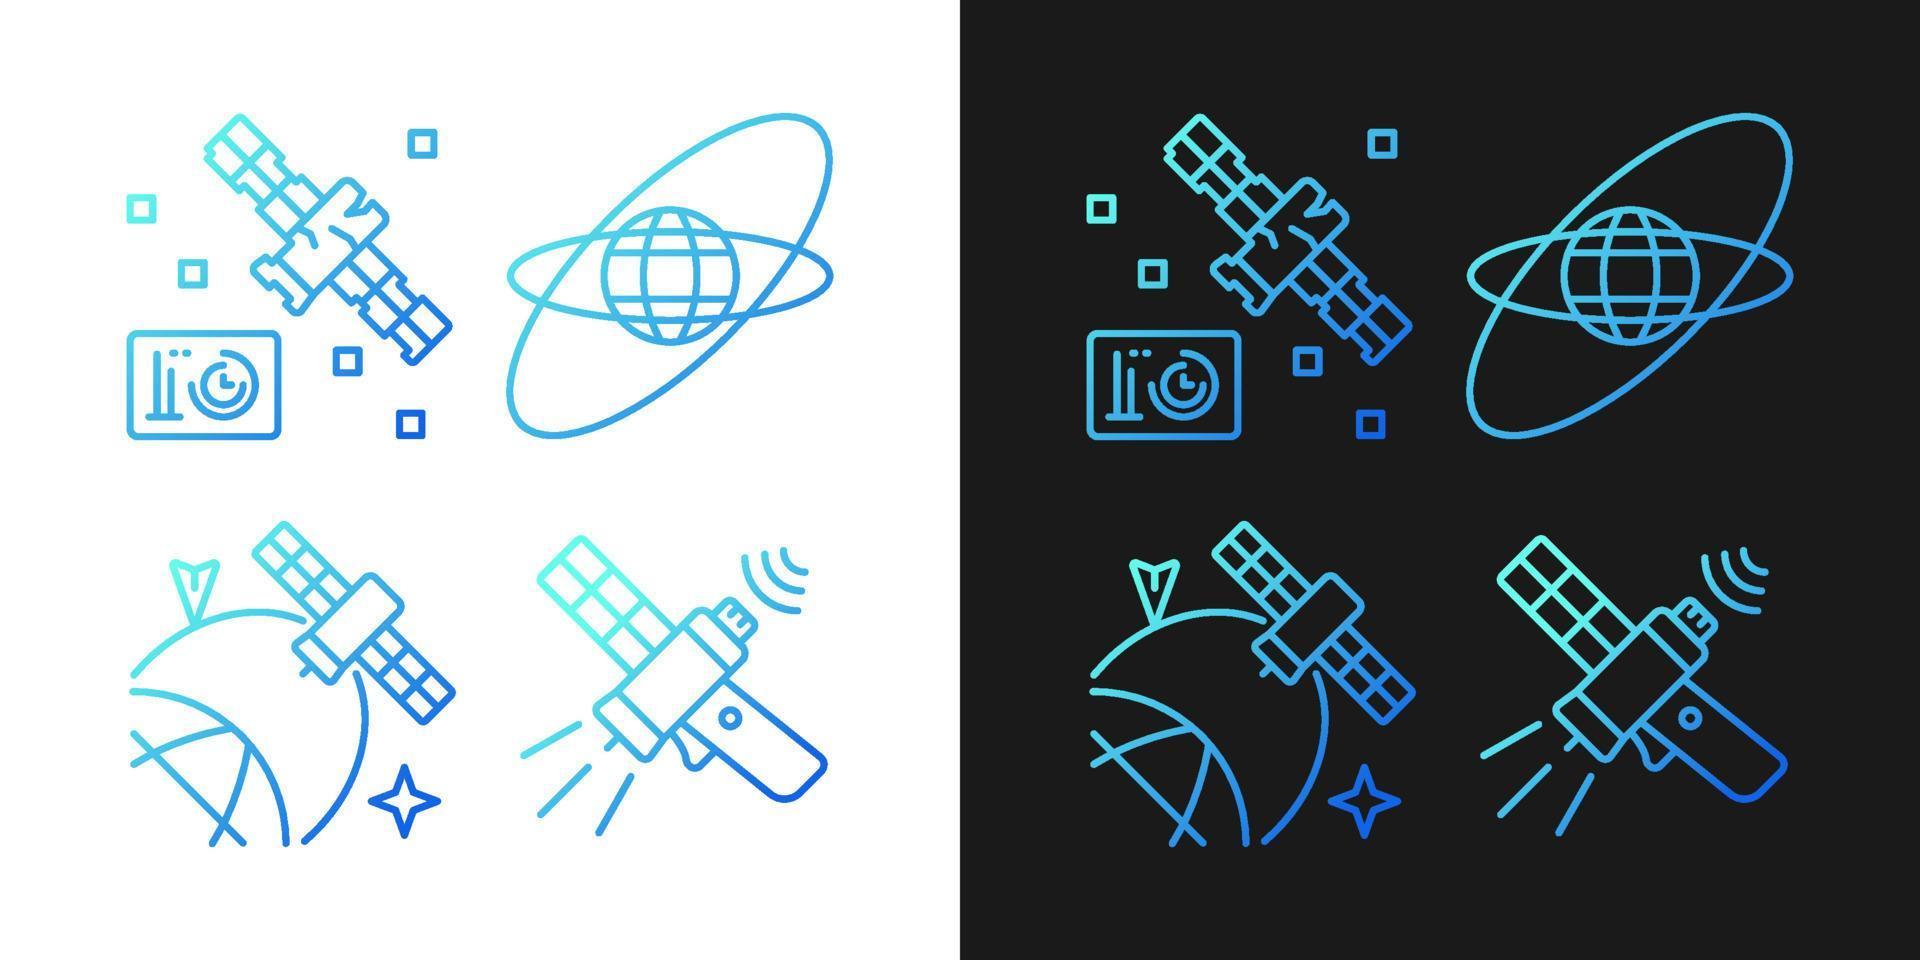 satelliti nelle icone del gradiente spaziale impostate per la modalità scura e chiara. fascio di simboli di contorno a linea sottile. raccolta di illustrazioni di contorno vettoriale isolata in bianco e nero